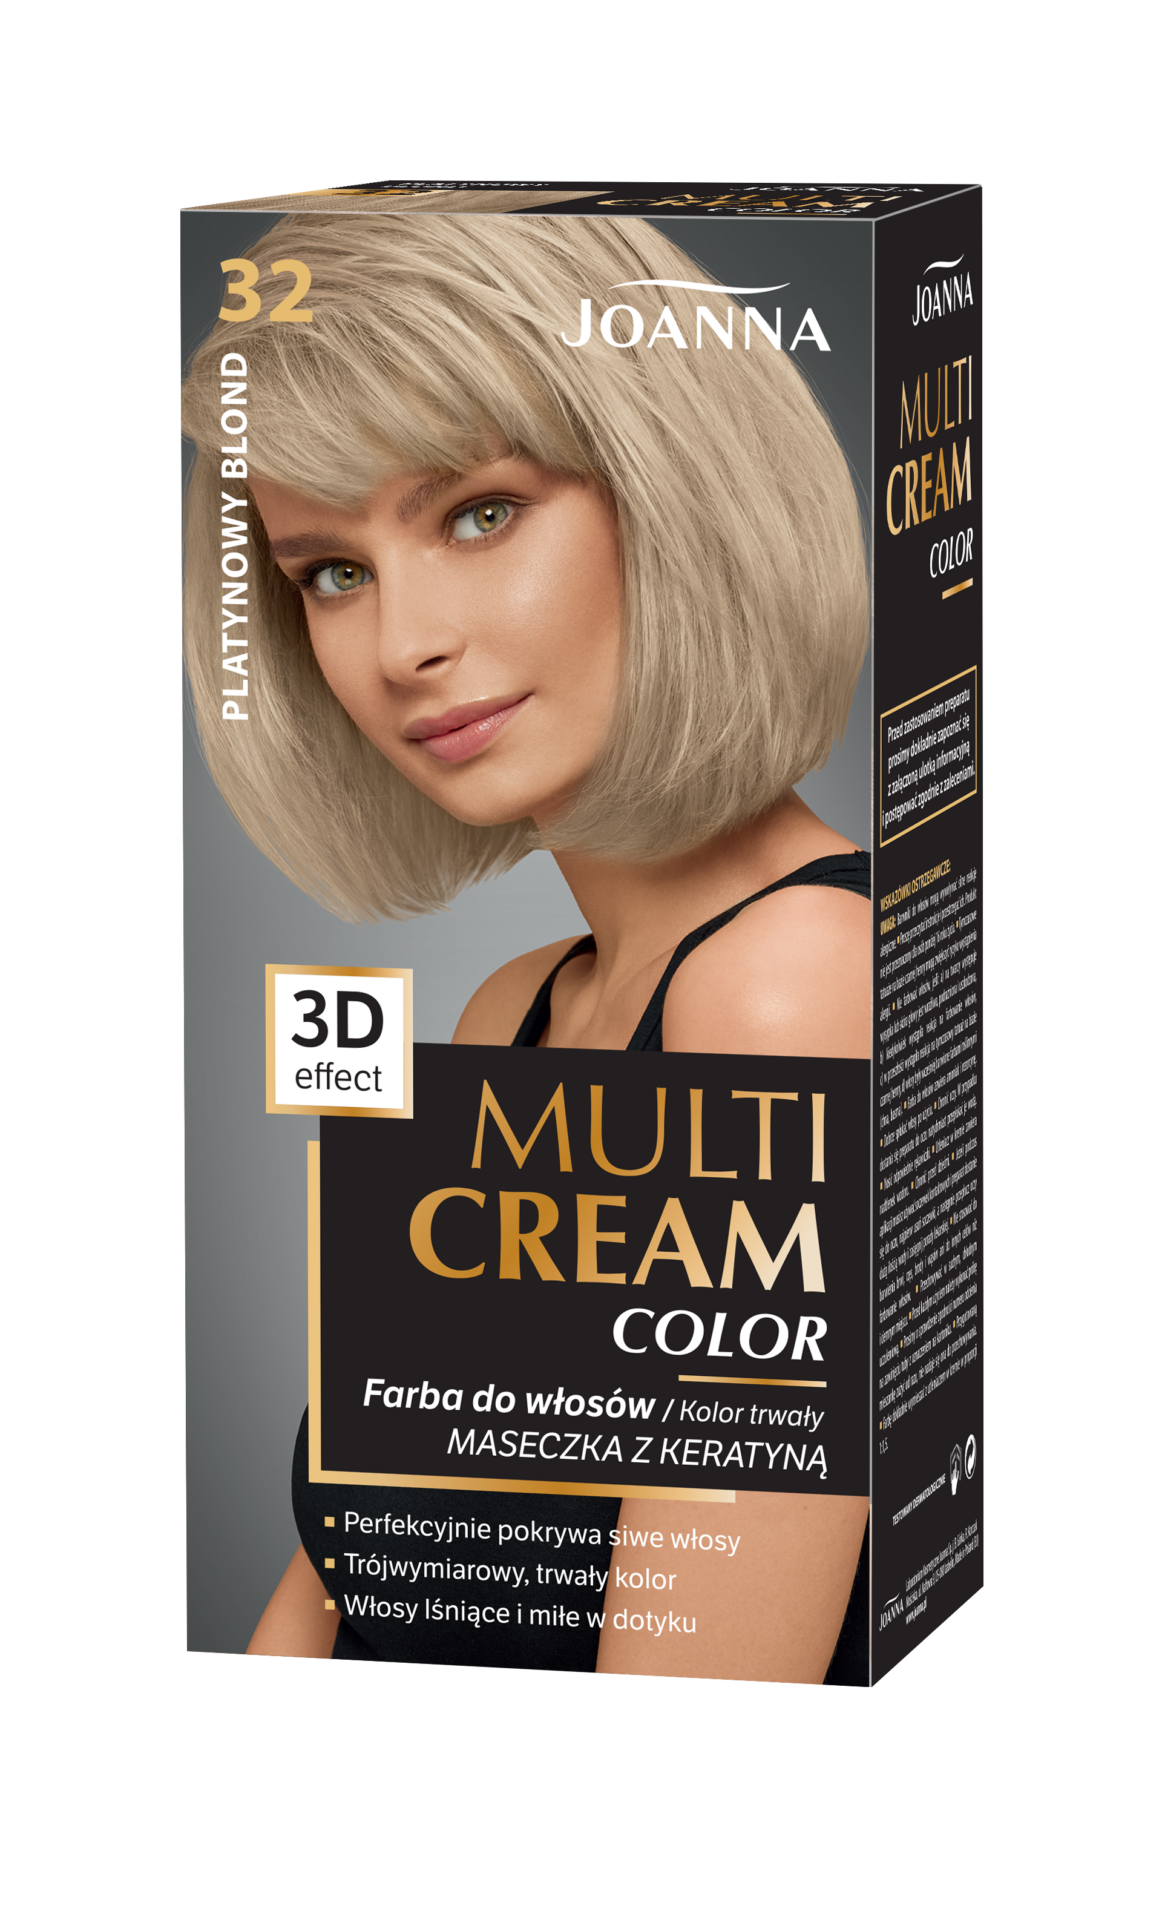 Trwała farba do włosów Joanna Multi Cream Color w odcieniu platynowy blond nr 32